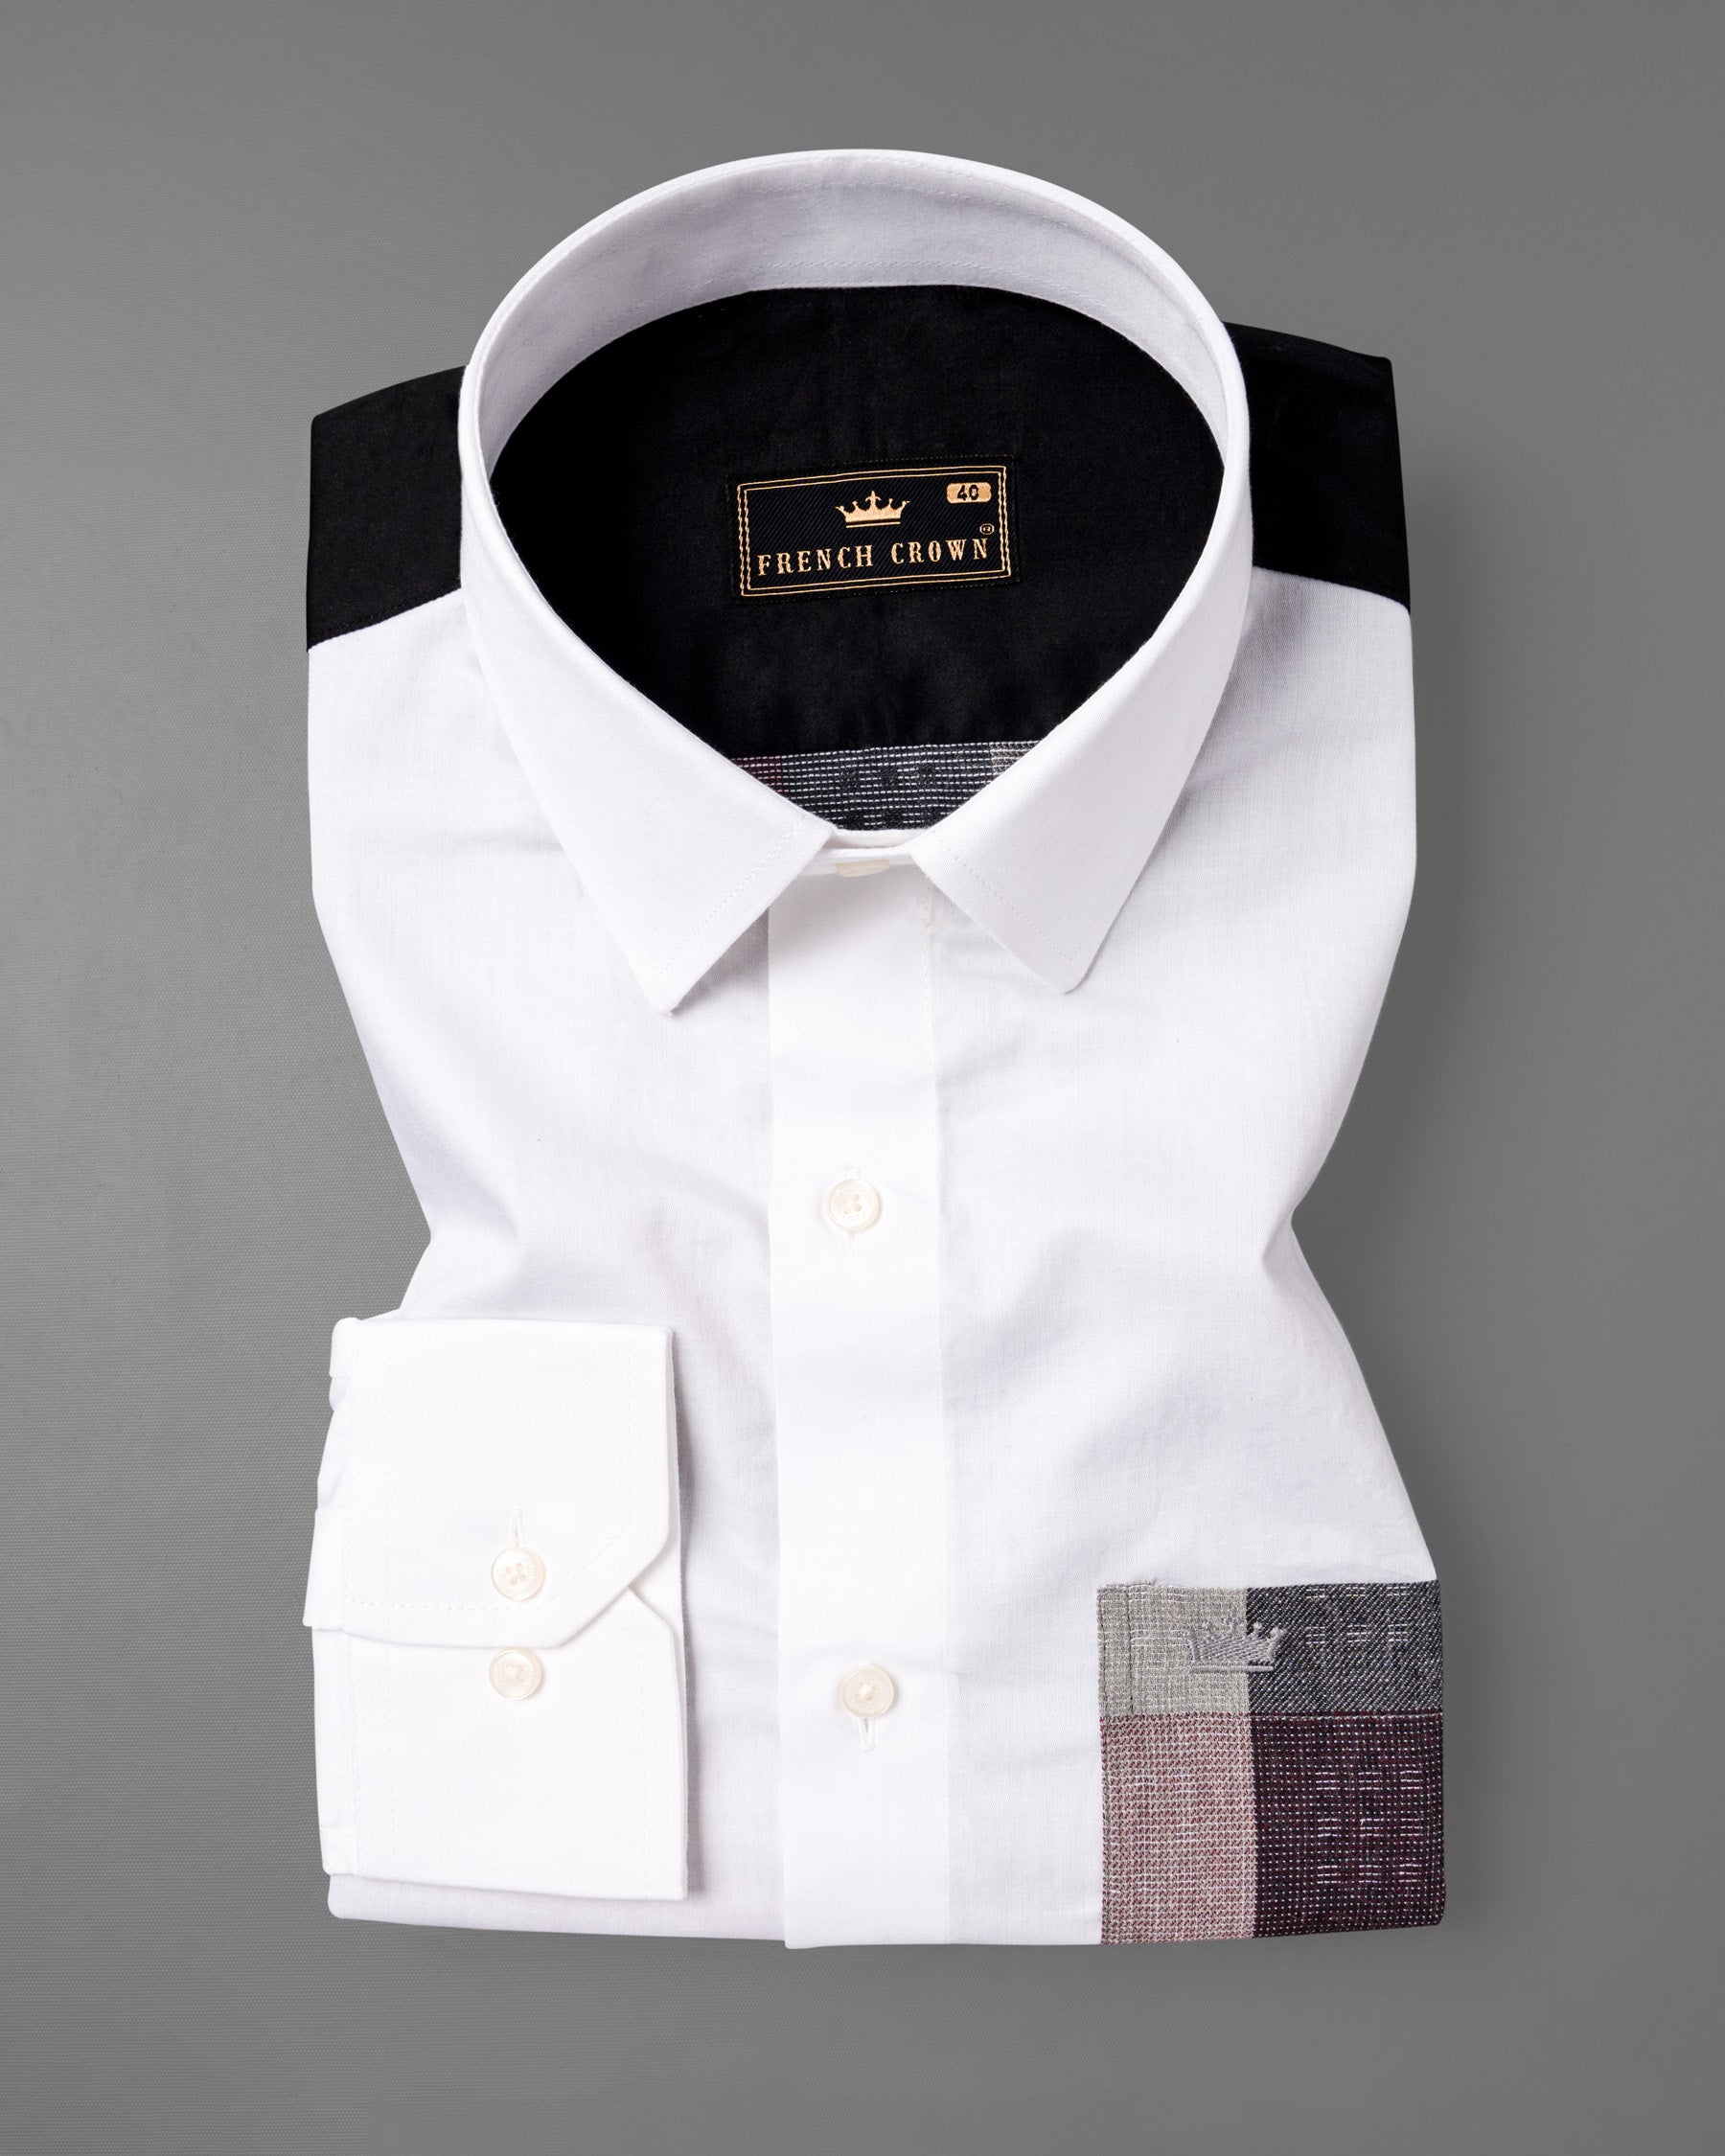 Bright White with Black Checkered Super Soft Premium Cotton Shirt